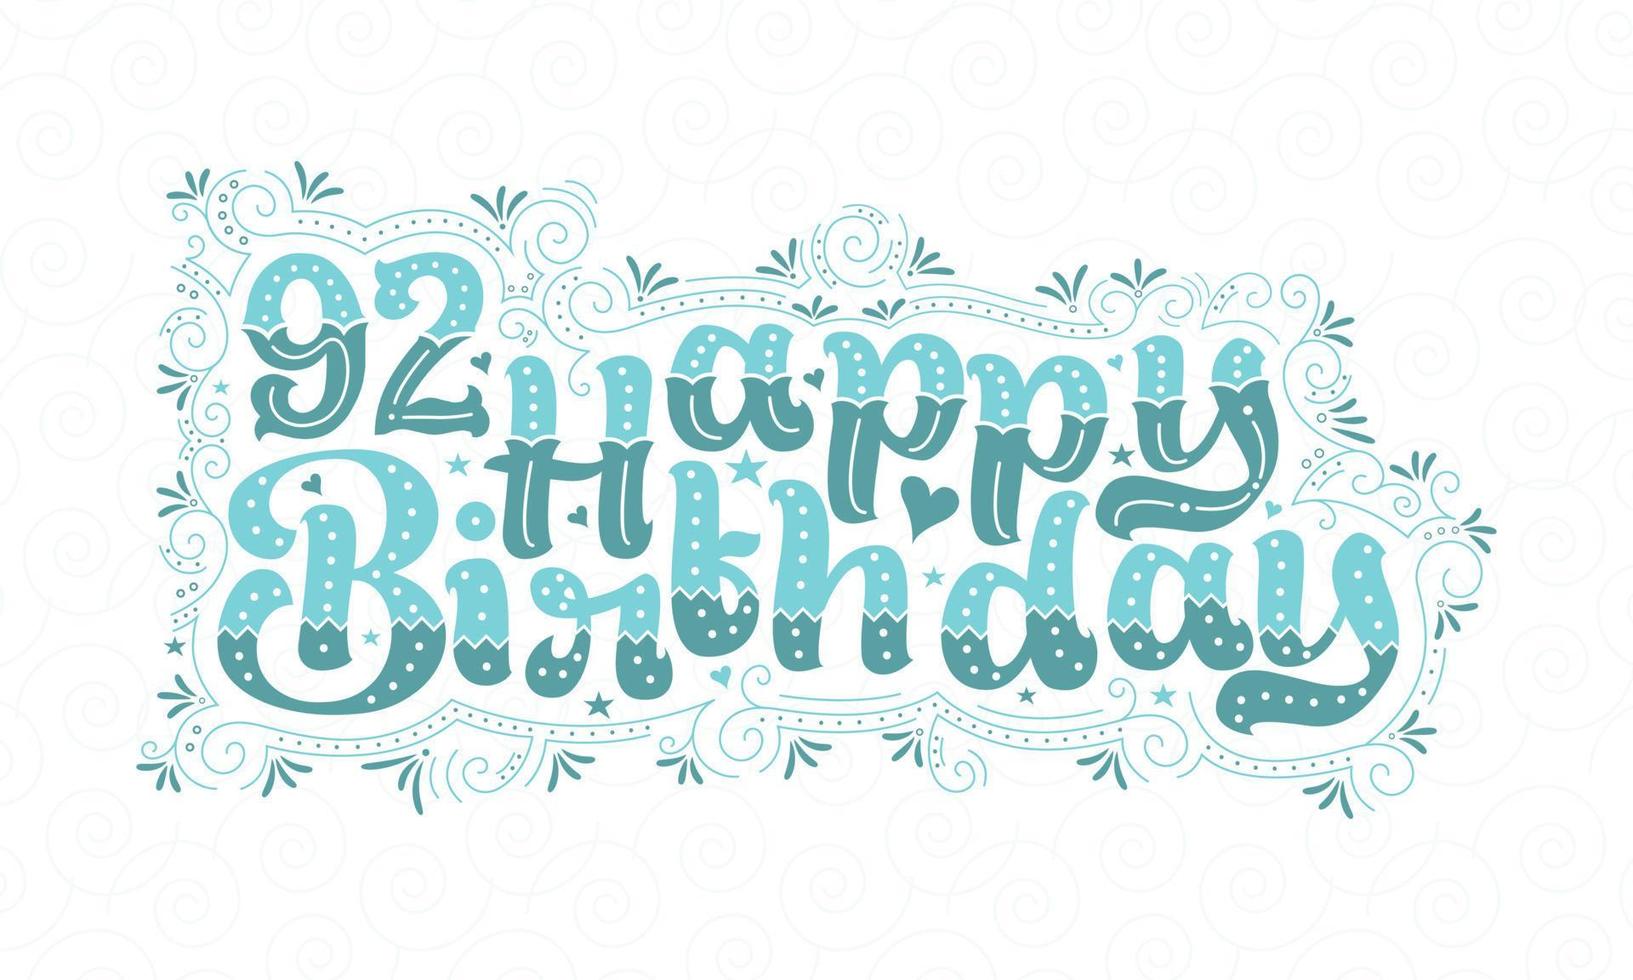 92. alles Gute zum Geburtstag Schriftzug, 92 Jahre Geburtstag schönes Typografie-Design mit Aquapunkten, Linien und Blättern. vektor